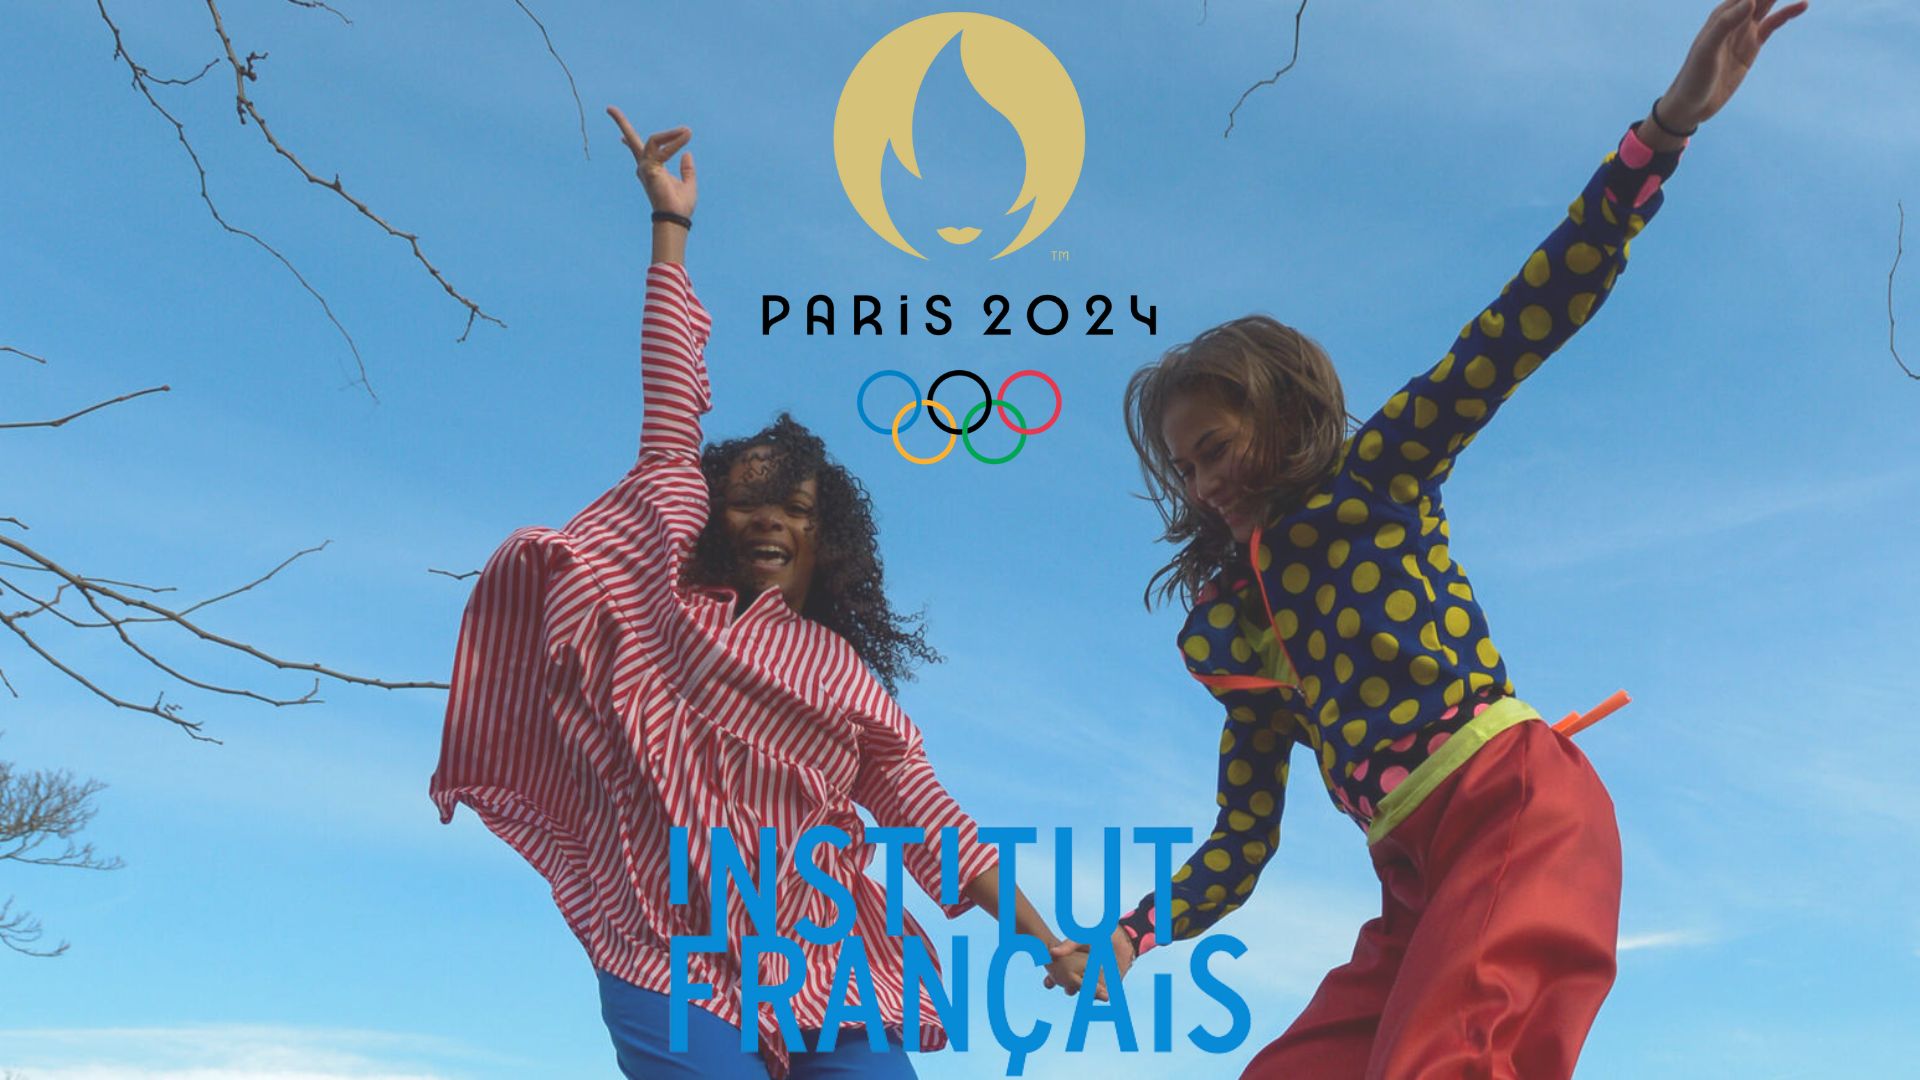 Institut français : soutient à la programmation culturelle autour des Jeux de paris 2024